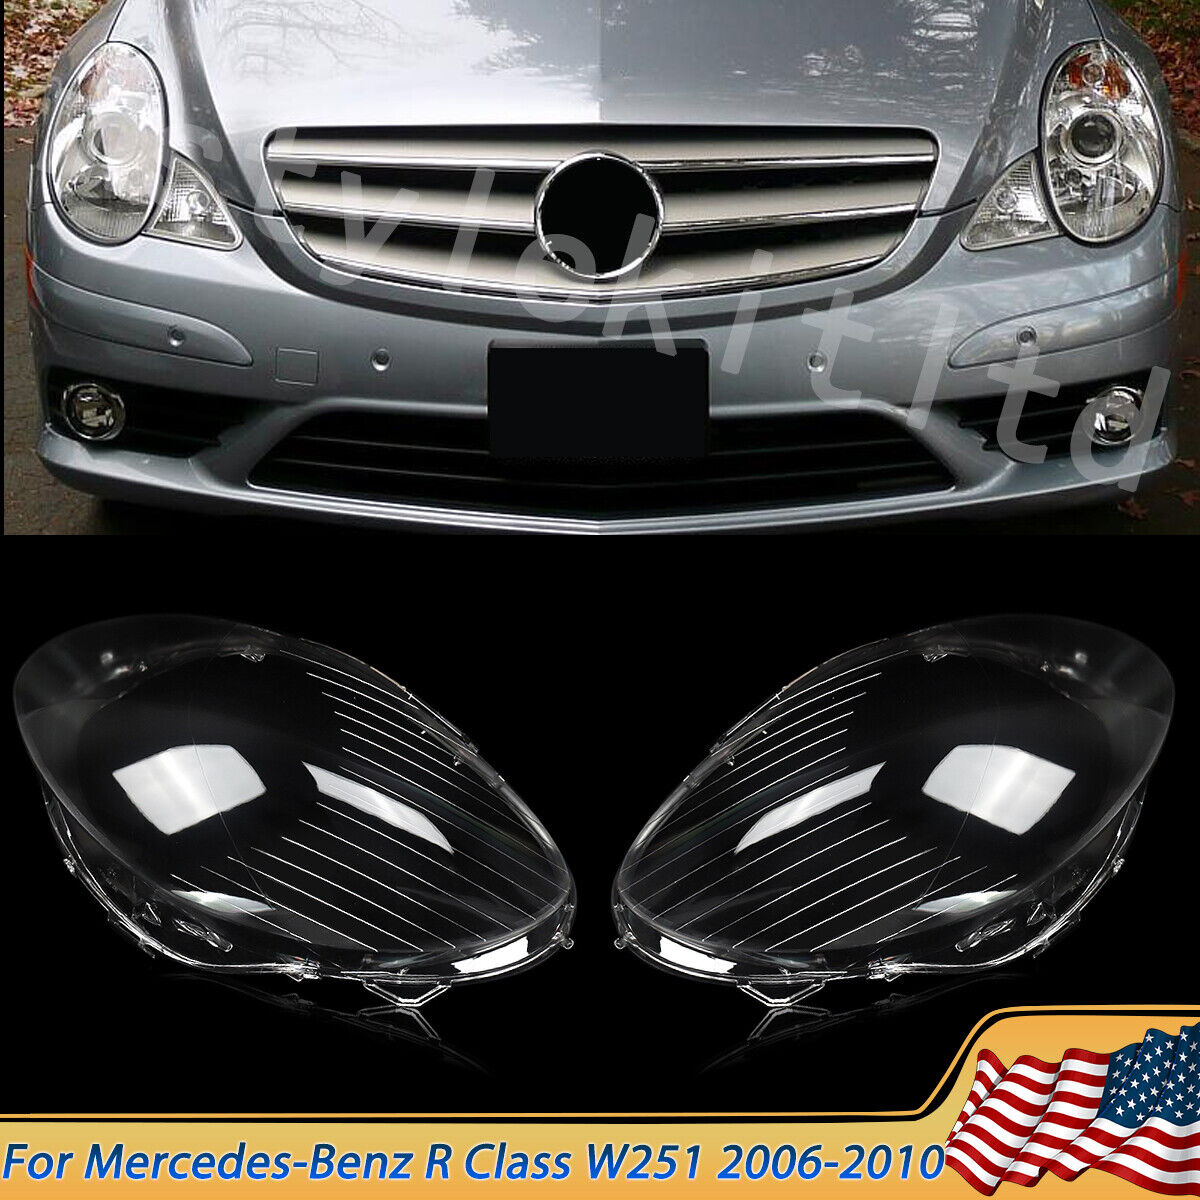 For Mercedes Benz W251 R350 R500 2006-2008 Pair LH+RH Headlight Clear Lens Cover